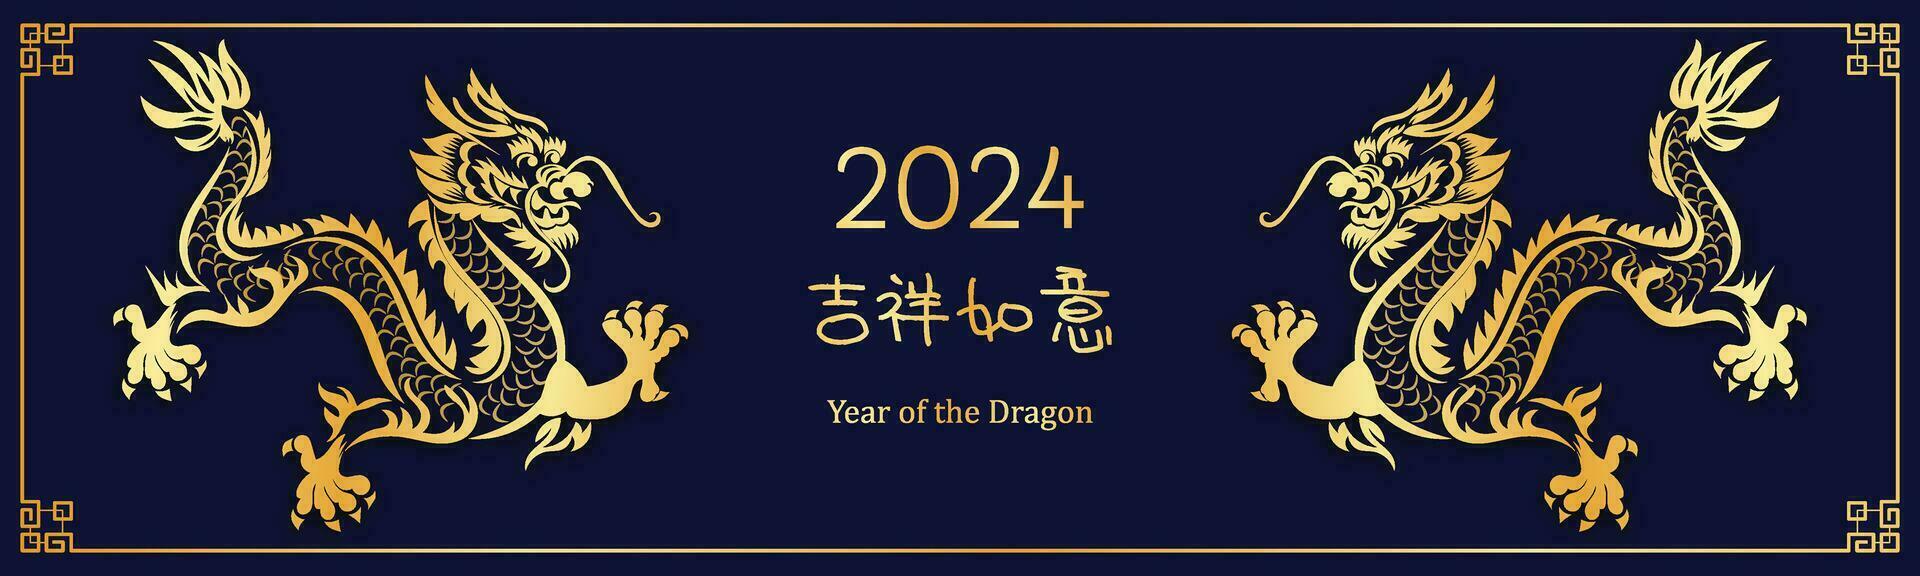 chino nuevo año 2024, el año de el continuar vector